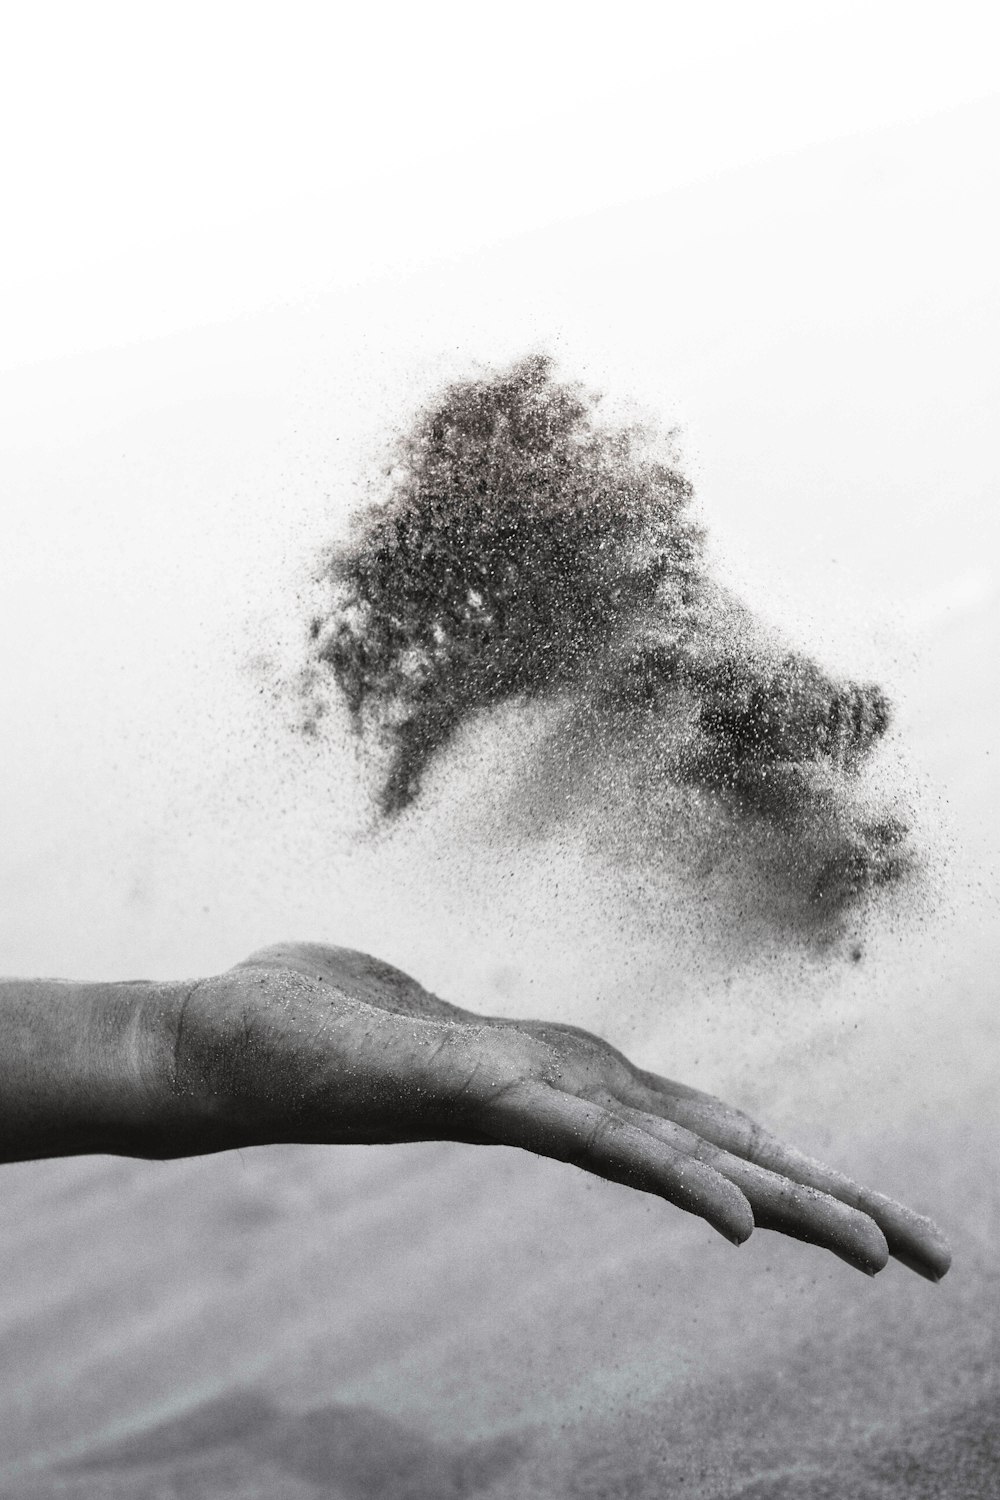 모래를 퍼뜨리는 사람의 손의 회색조 사진